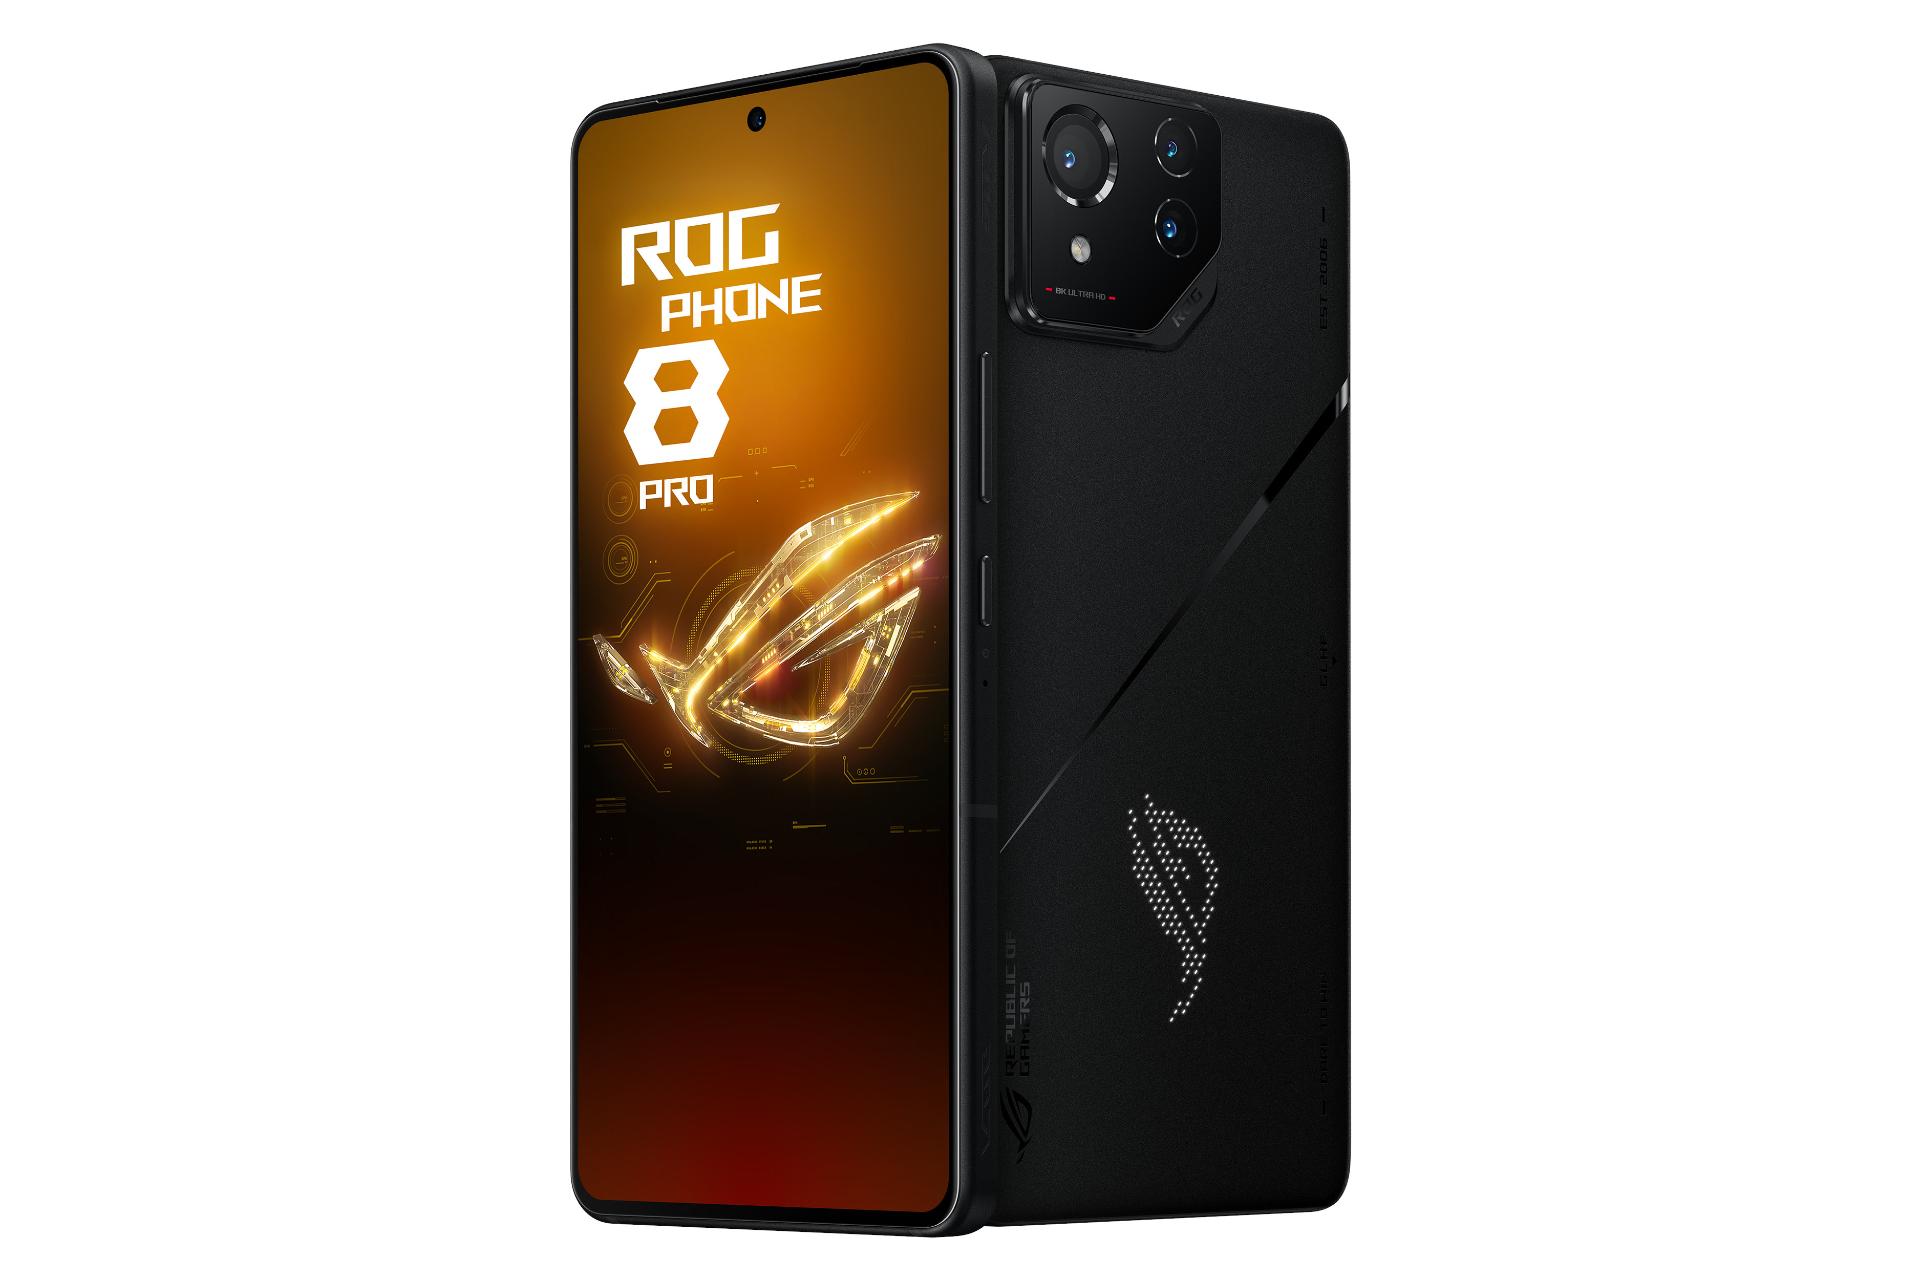 نمای جانبی و دکمه های گوشی موبایل ROG فون 8 پرو ایسوس مشکی / ASUS ROG Phone 8 Pro